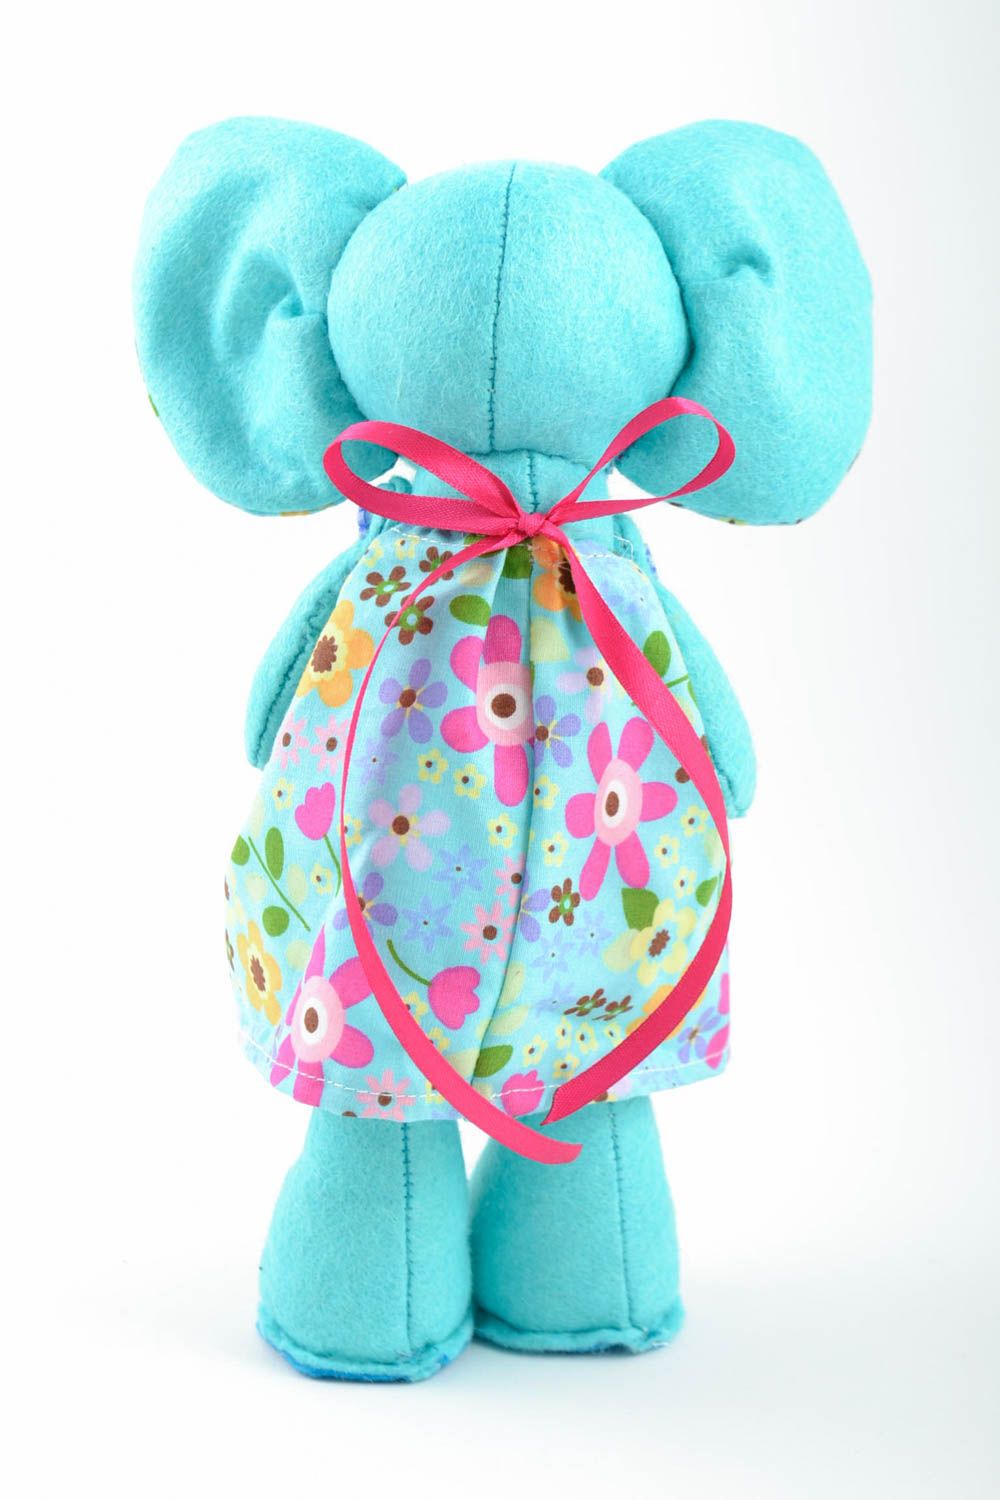 Мягкая игрушка слон ручной работы авторская красивая стильная из ткани для детей фото 2